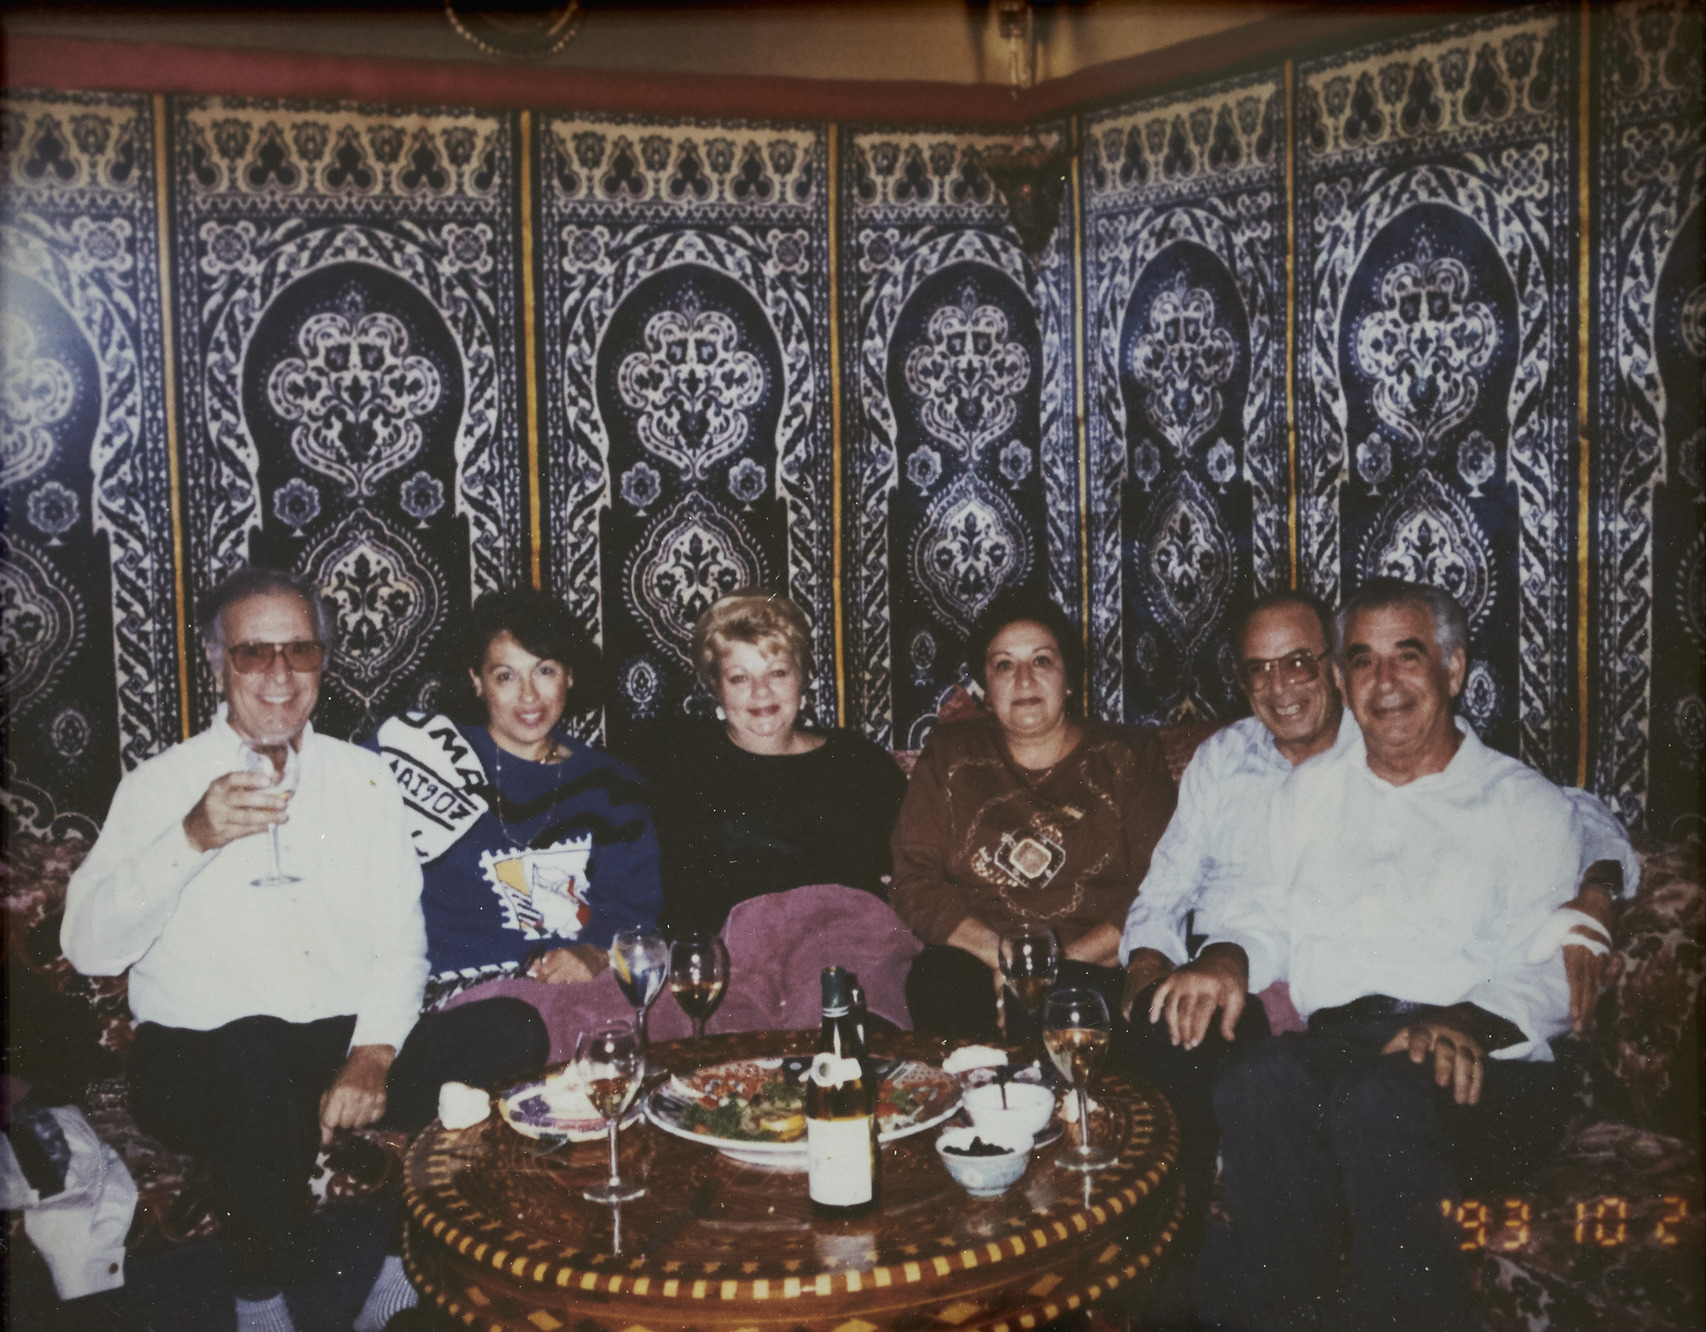 Photograph of Torjmans and friends in Marrakech Restaurant, 1993